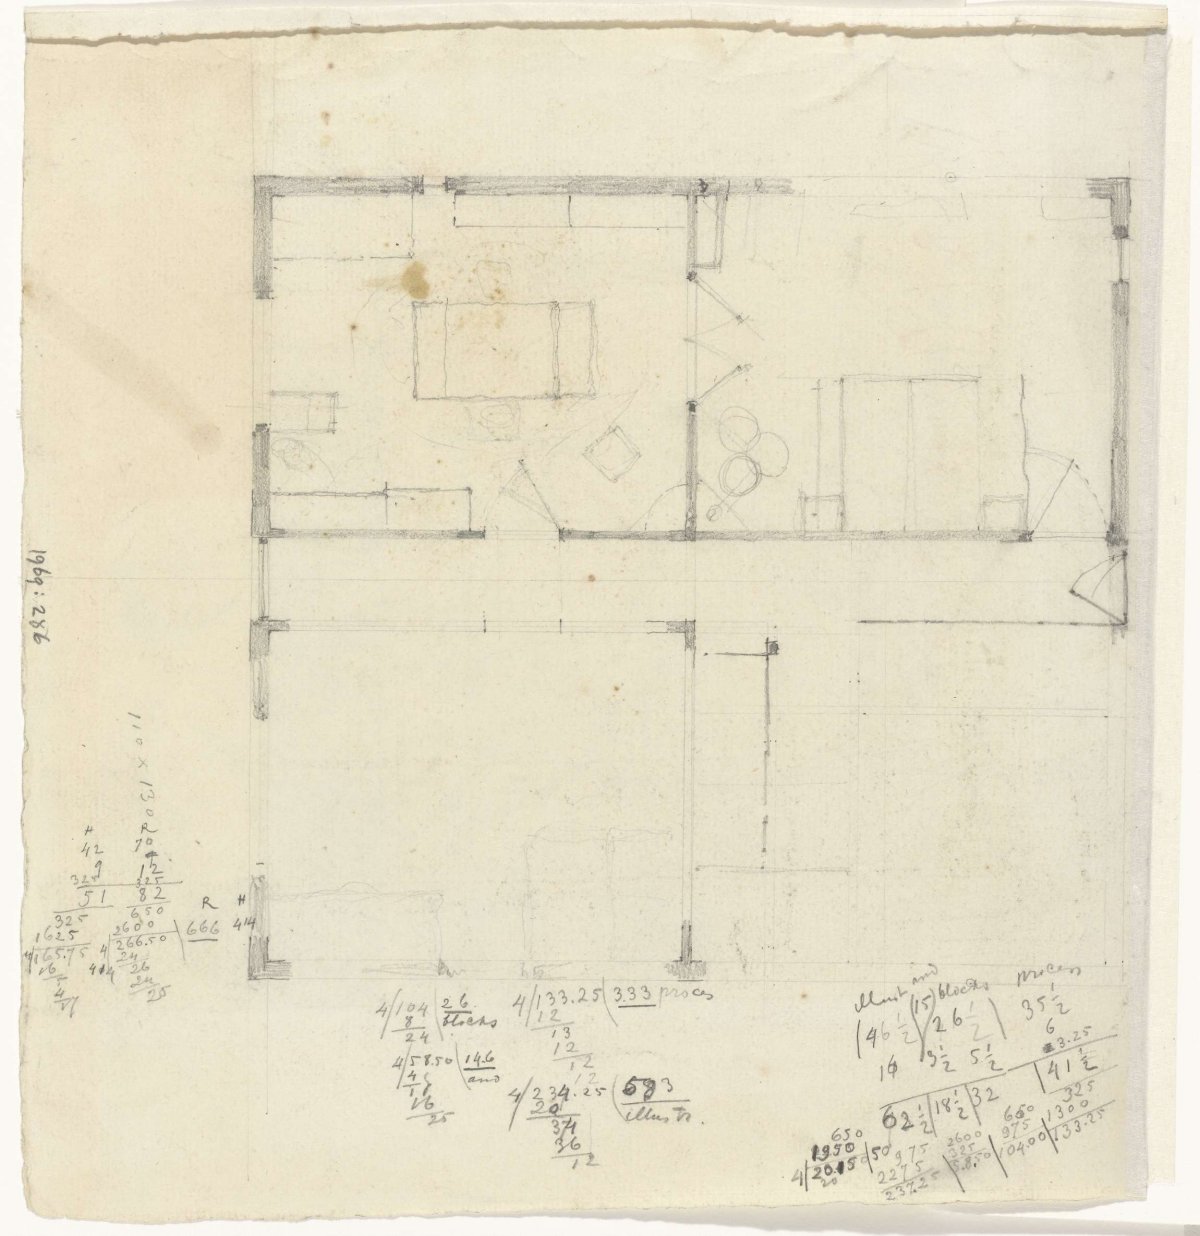 Plan of a house, Gerrit Willem Dijsselhof, 1876 - 1924